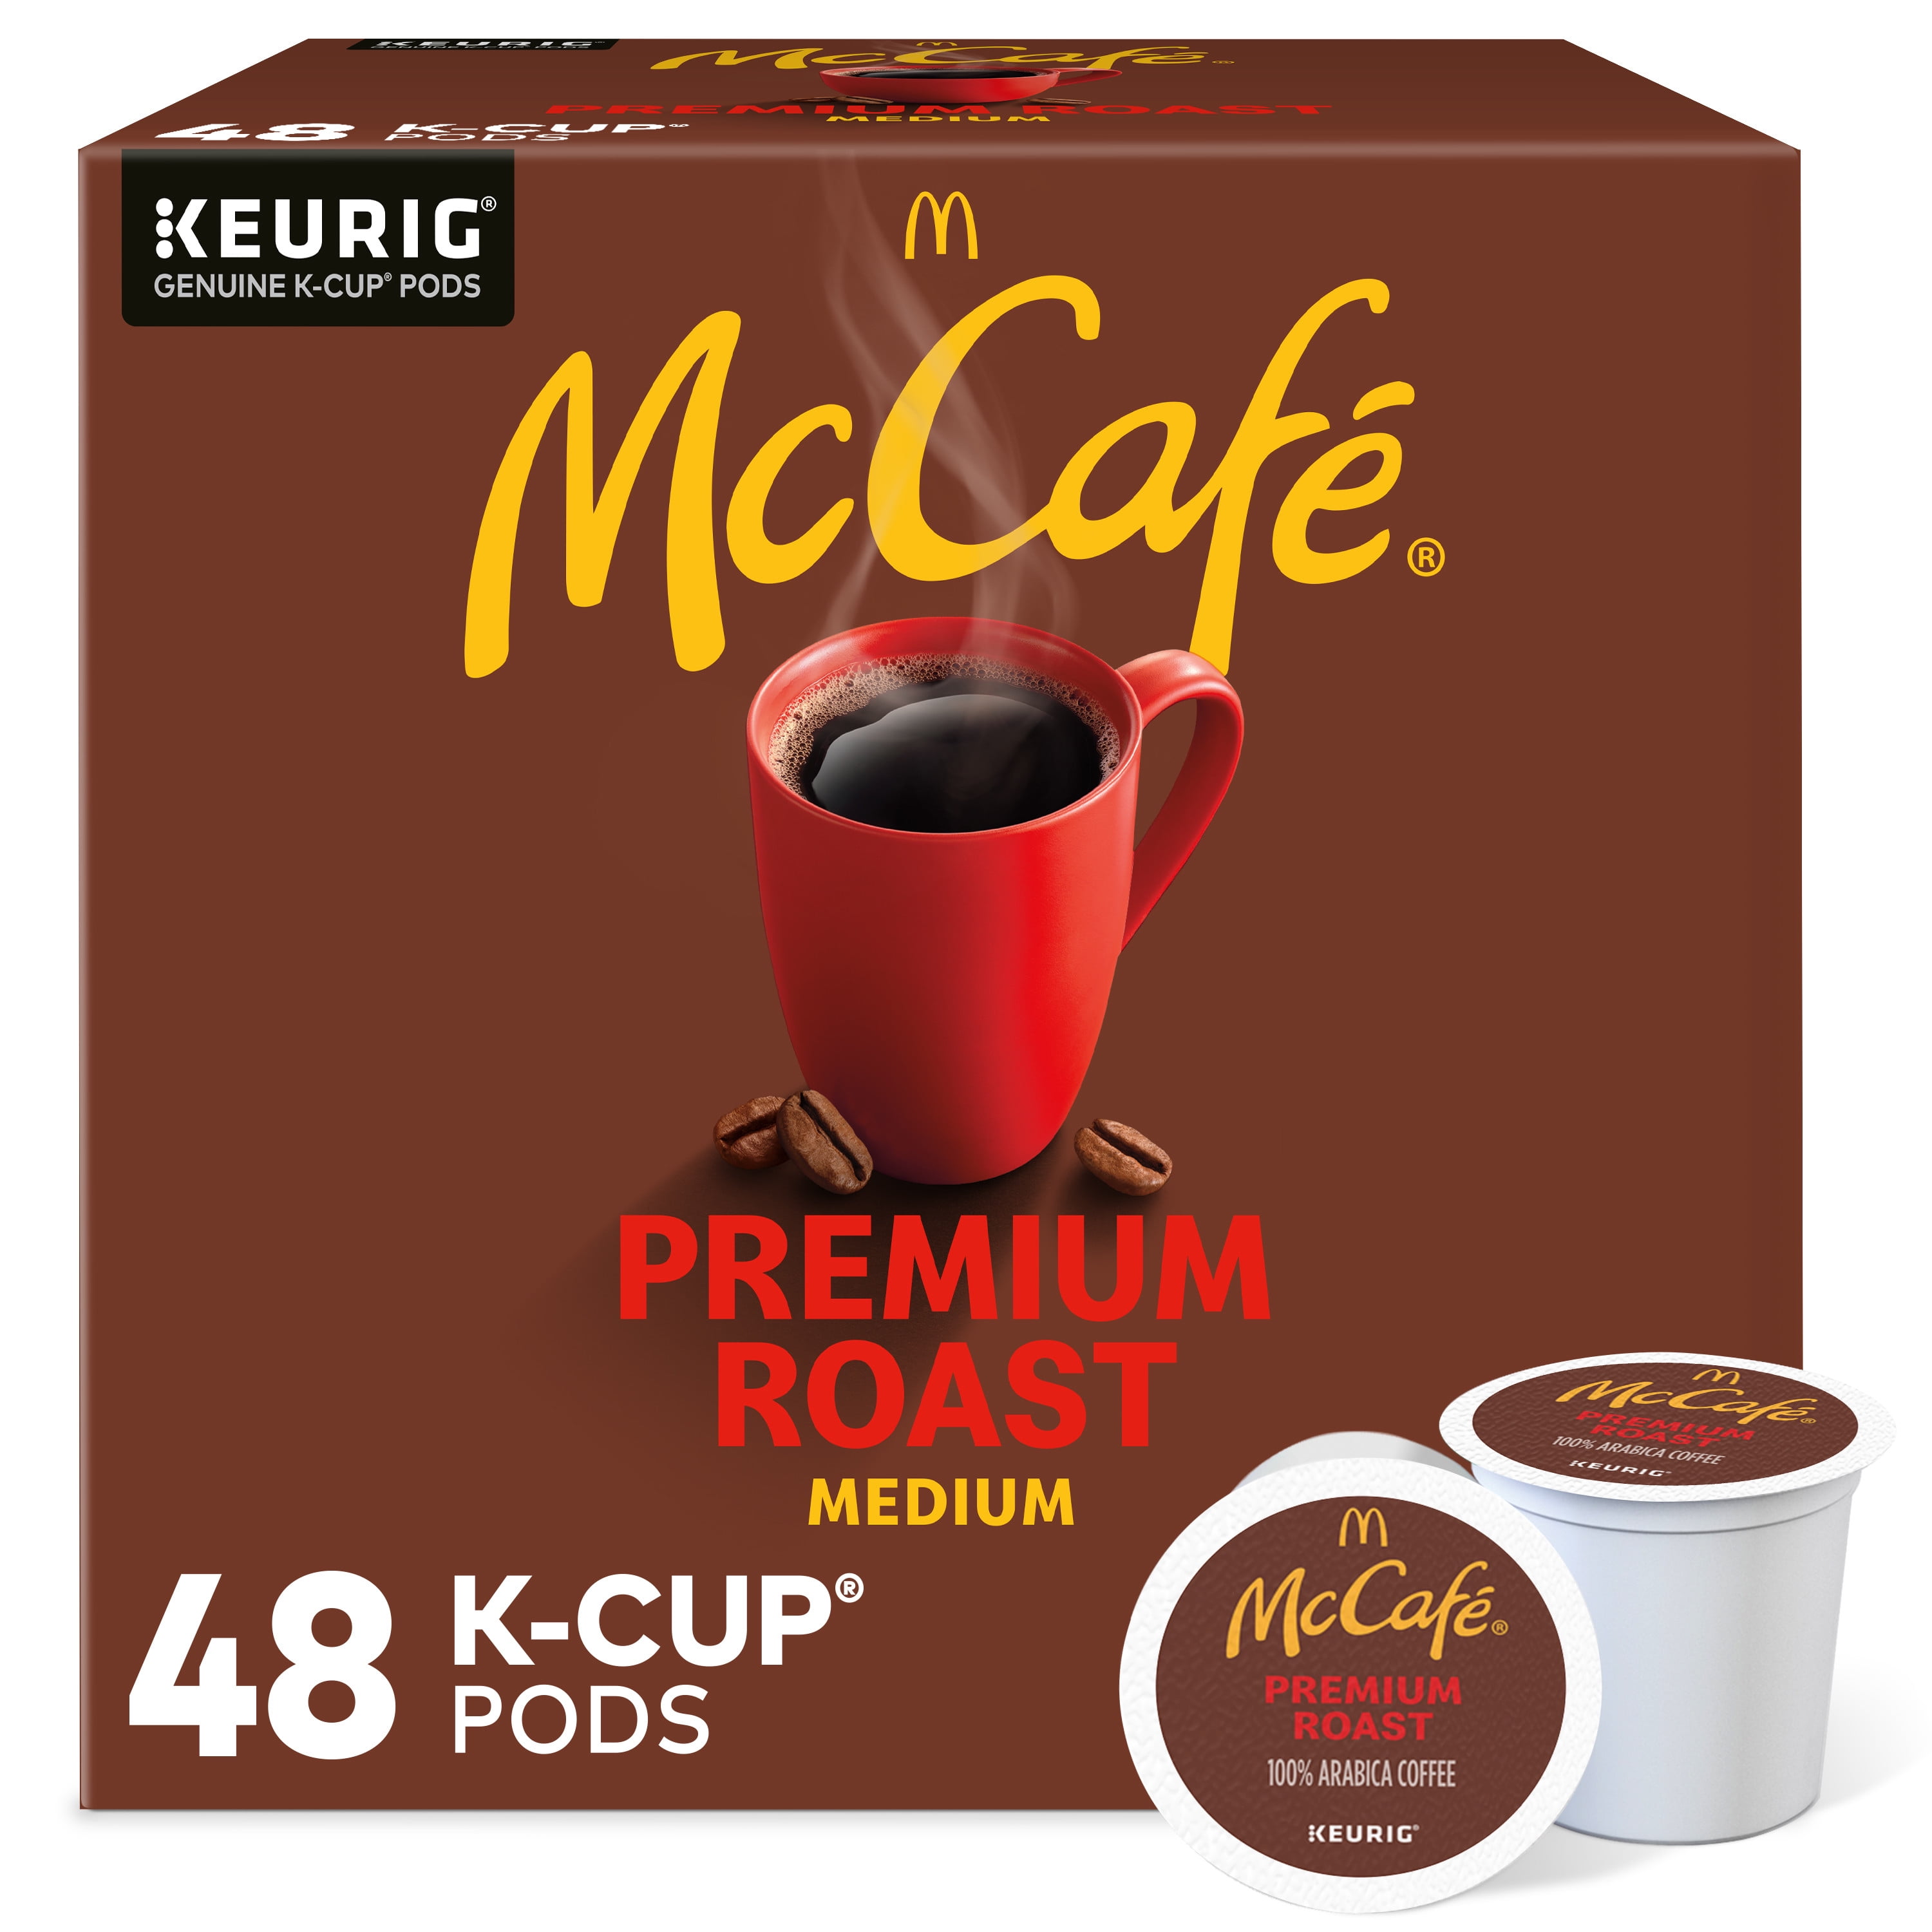 McCafe, Premium Medium Roast K-Cup Coffee Pods, 48 Count